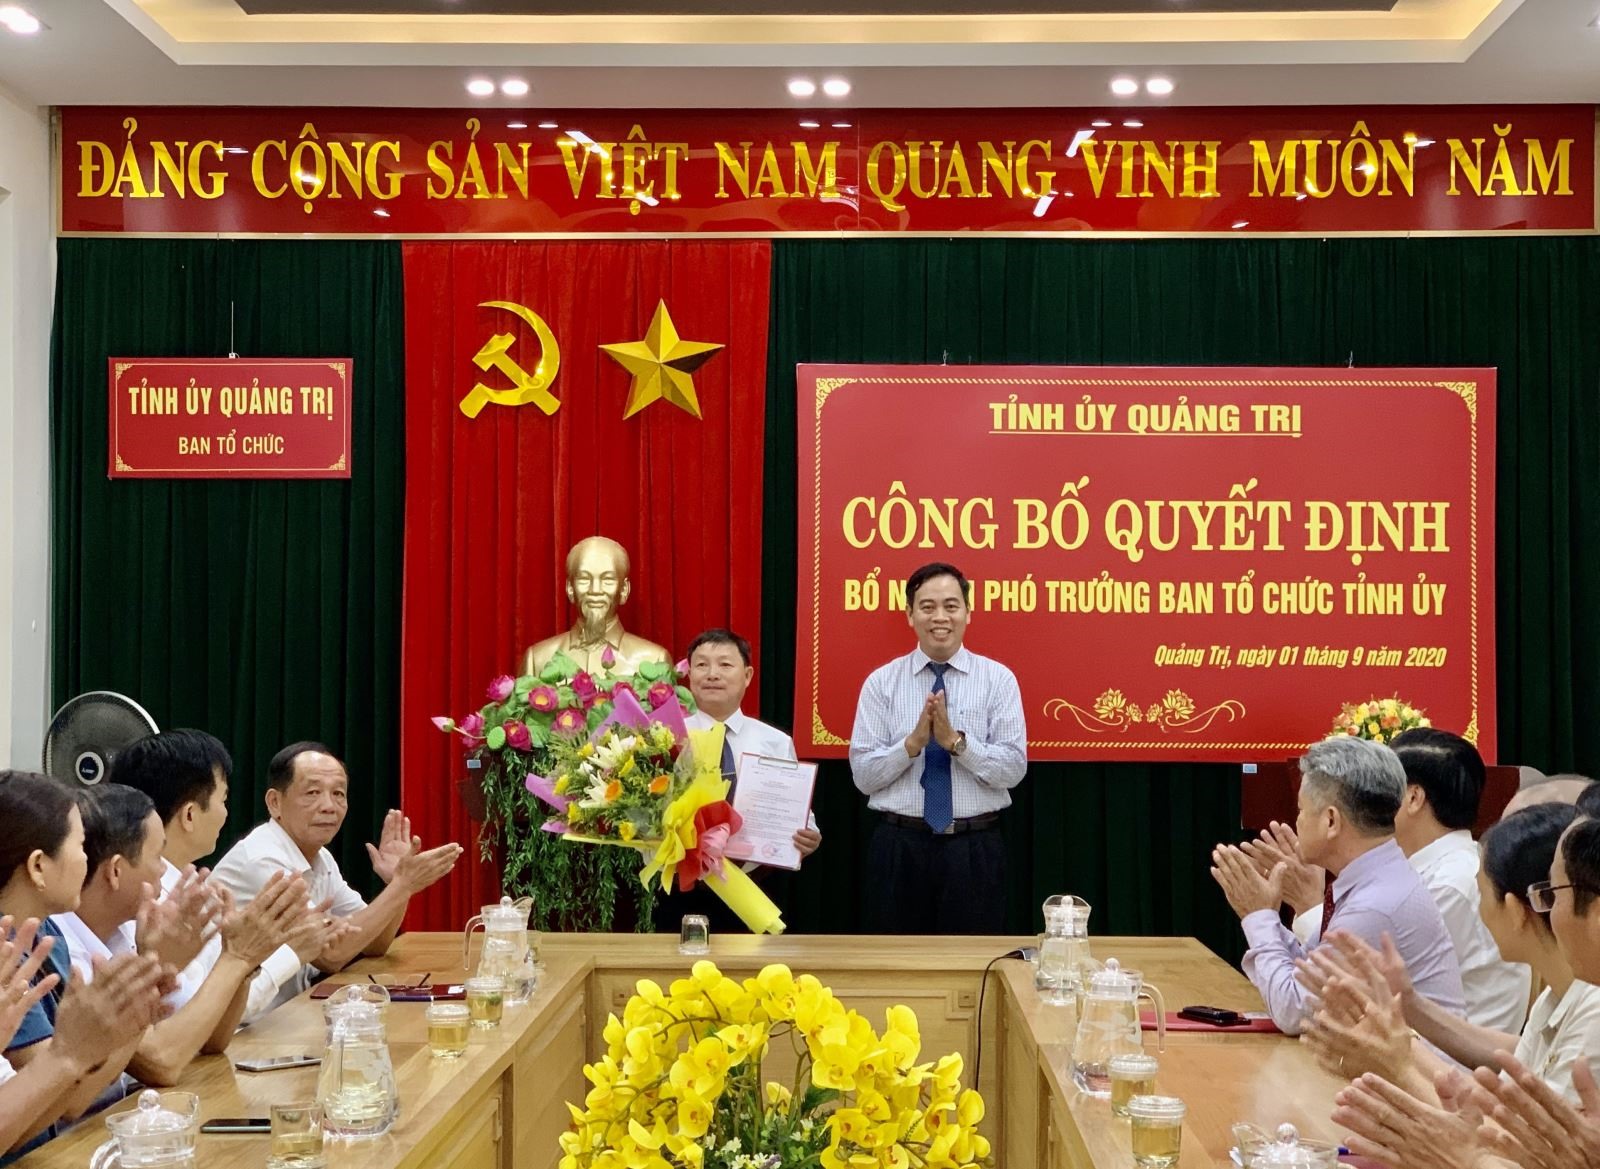 Quyết định bổ nhiệm Phó Trưởng Ban Tổ chức Tỉnh uỷ cho đồng chí Nguyễn Đức Lập